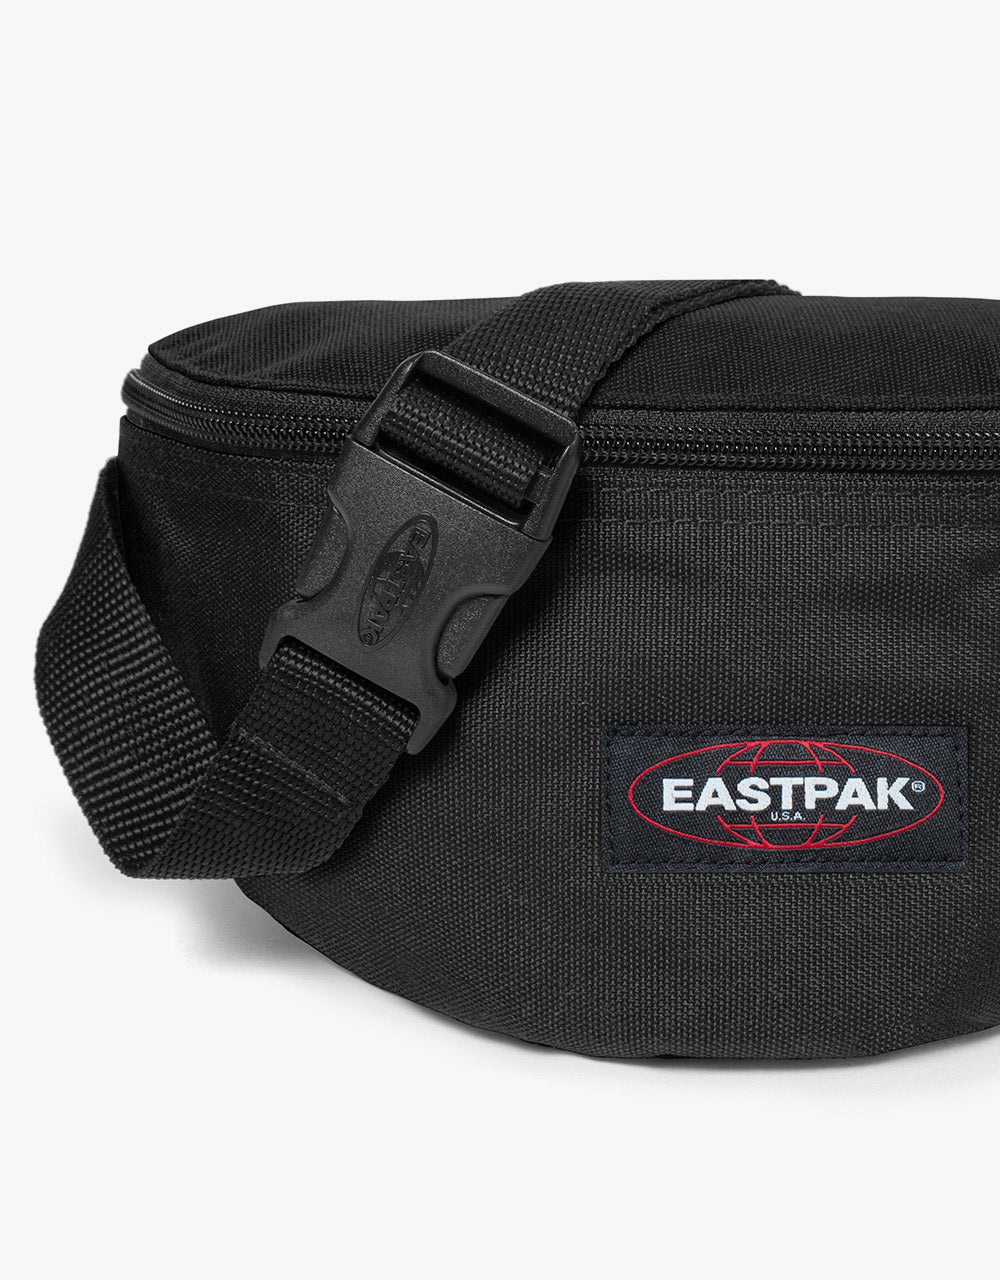 Eastpak Springer Cross Body Bag - Black